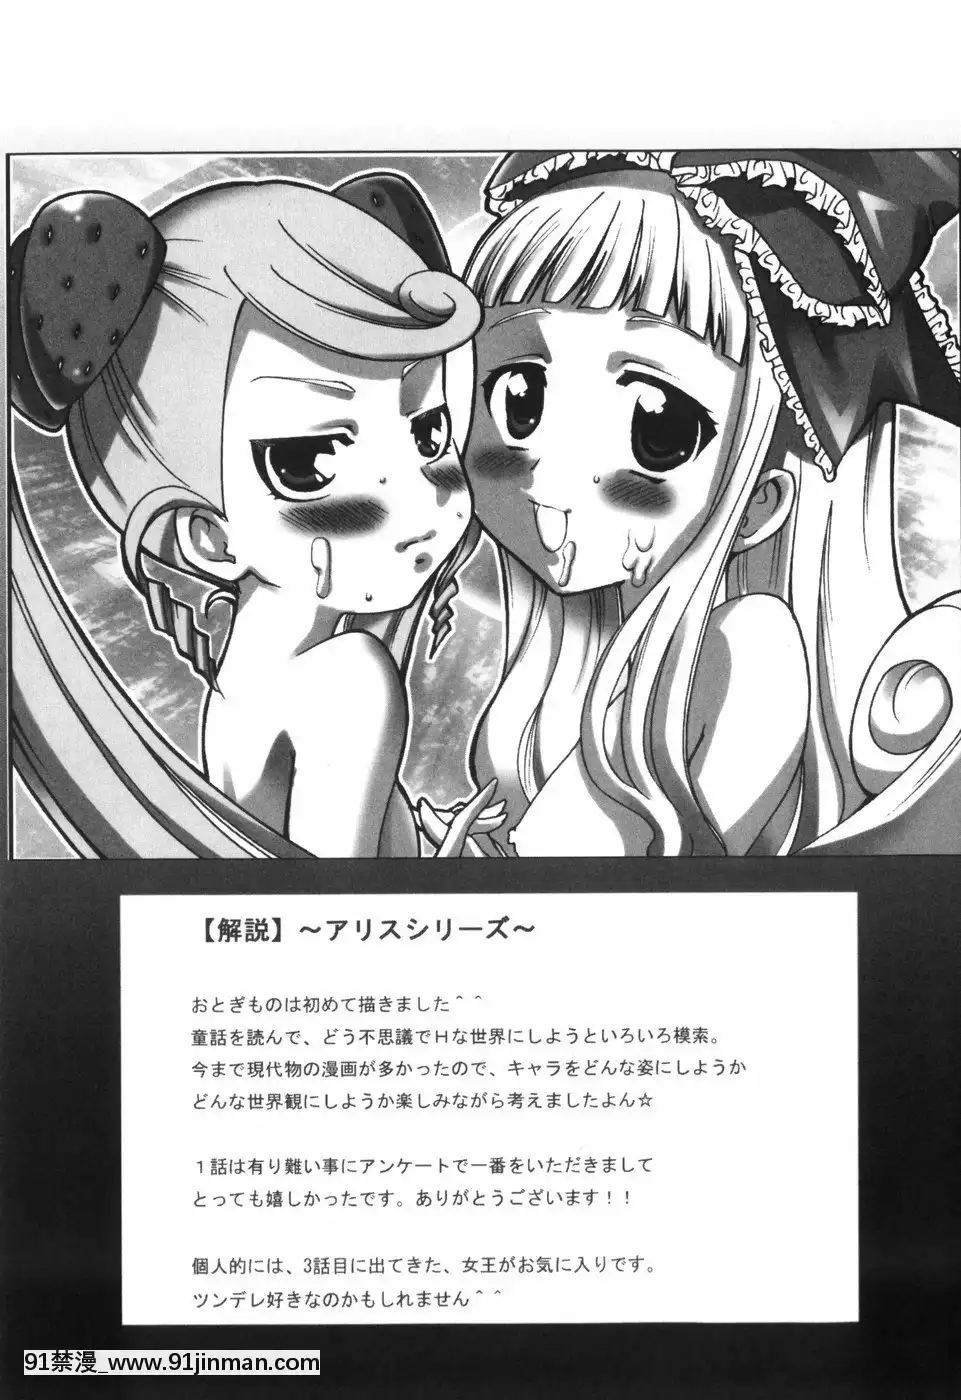 [香月りお]アリスのひめごと   Alice's Himegoto【code truyện tranh online】